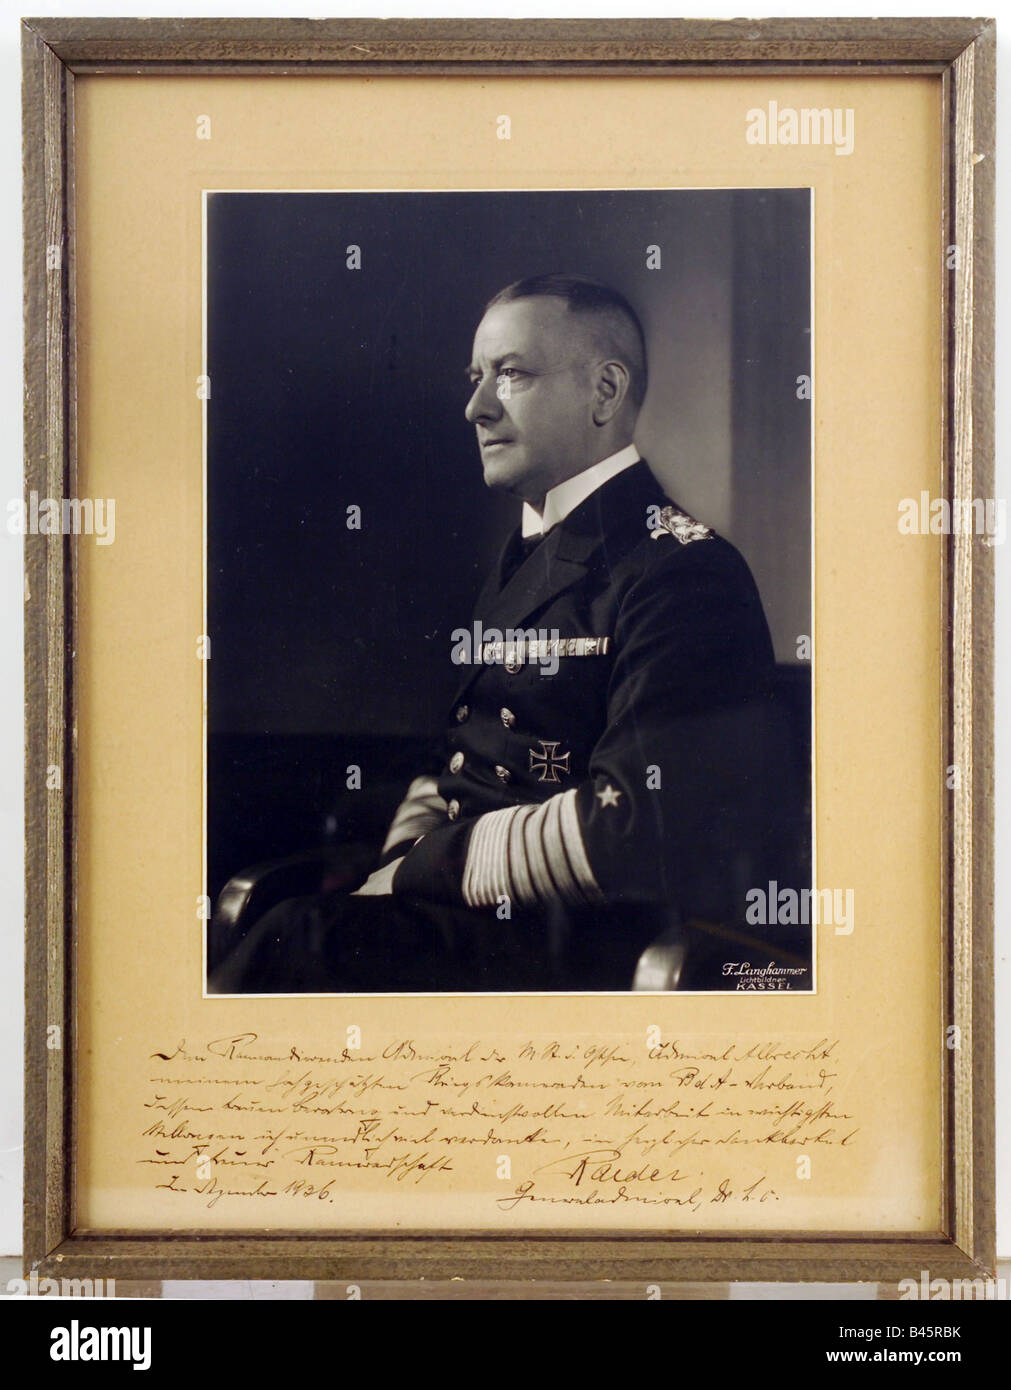 Raeder, Erich, 24.4.1876 - 6. 11.1960, amiral allemand, commandant en chef de la marine allemande 1.6.1935 - 30.1.1943, demi-longueur, autographe, décembre 1936, marine, Allemagne, XXe siècle, Banque D'Images